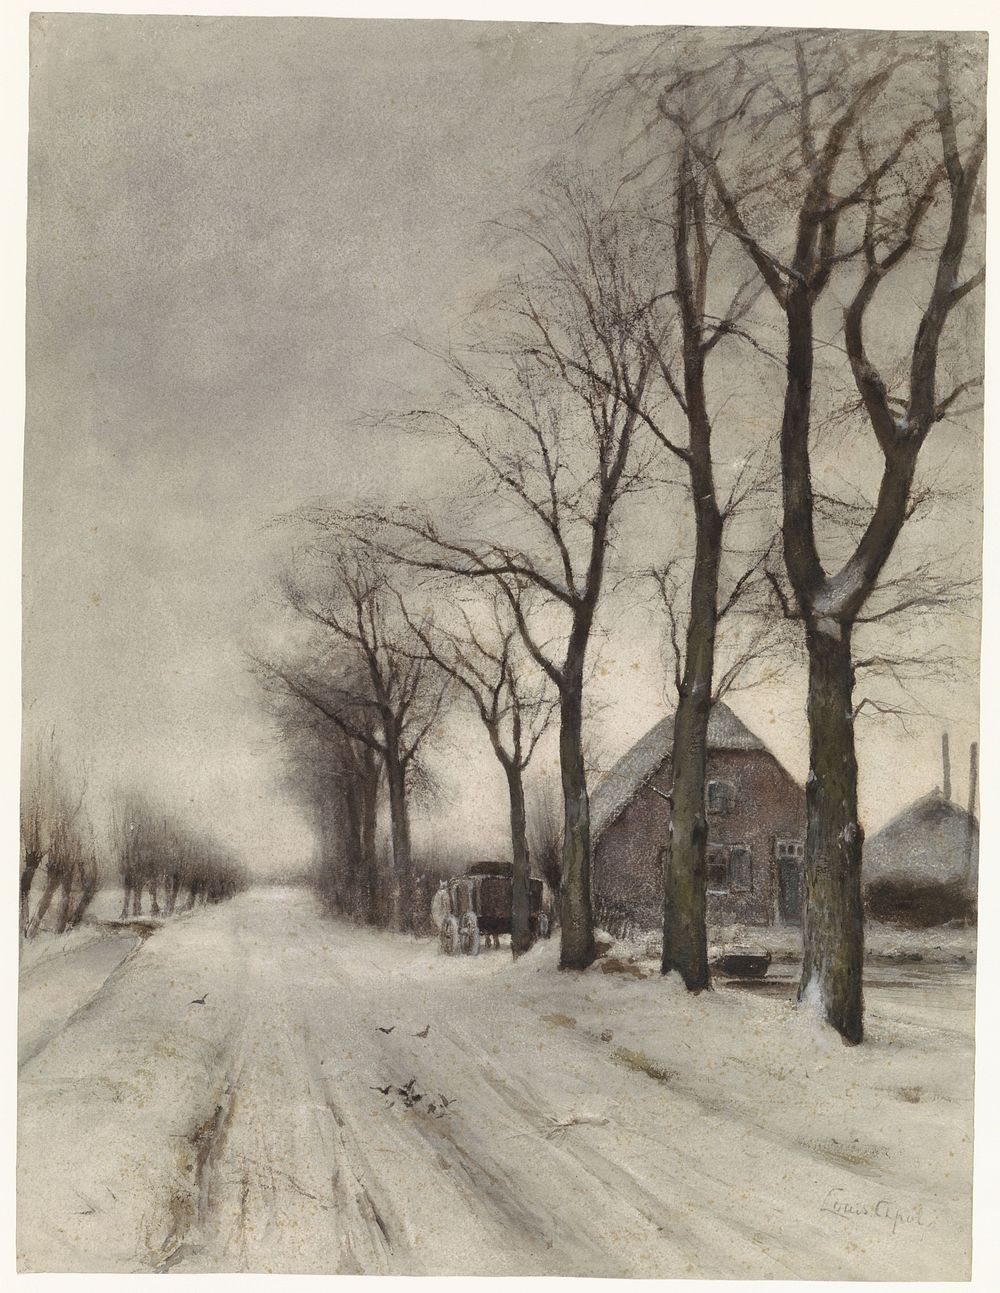 Winterlandschap met boerderij aan een laan (1860 - 1892) by Louis Apol